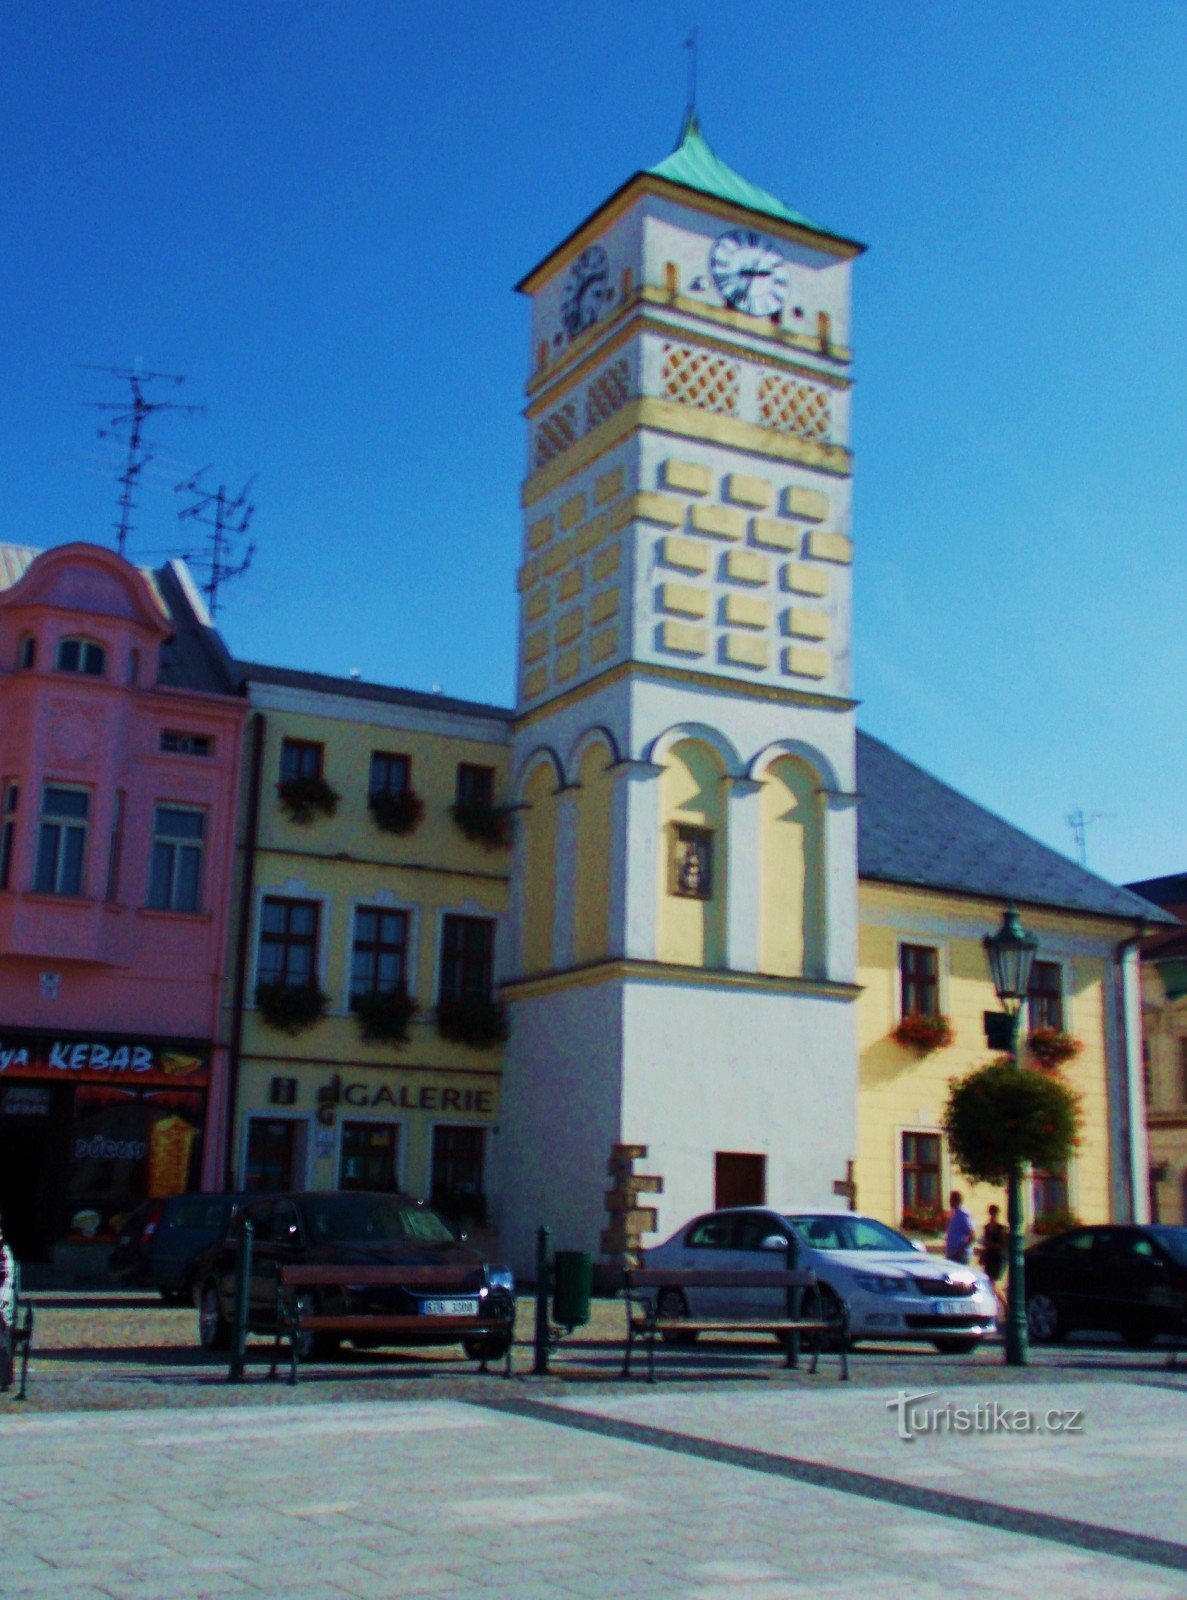 Το κτίριο του δημαρχείου - το κυρίαρχο χαρακτηριστικό της πλατείας Masaryk στην Karviná